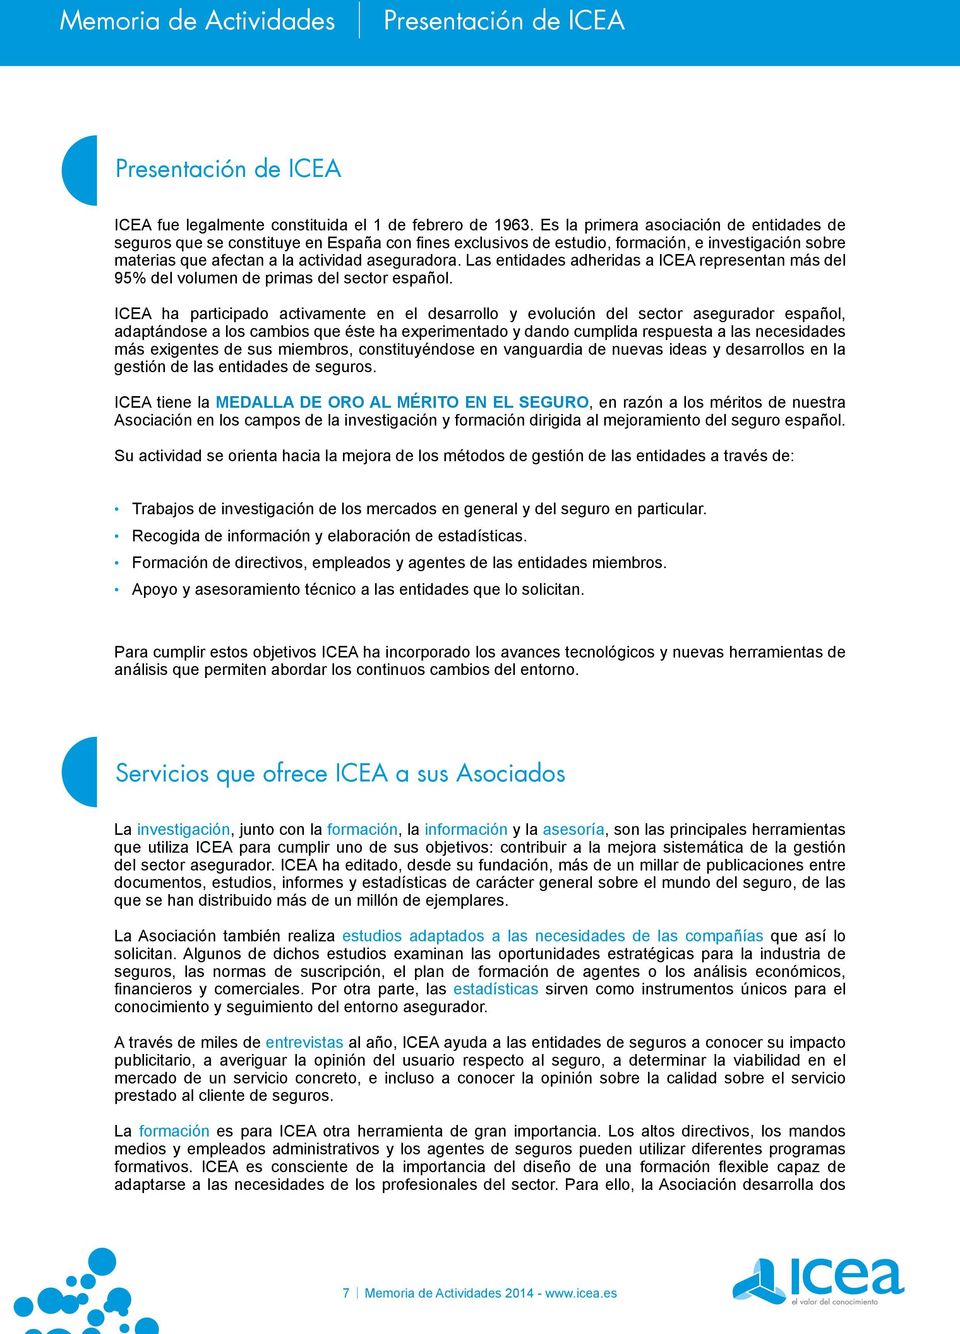 Las entidades adheridas a ICEA representan más del 95% del volumen de primas del sector español.